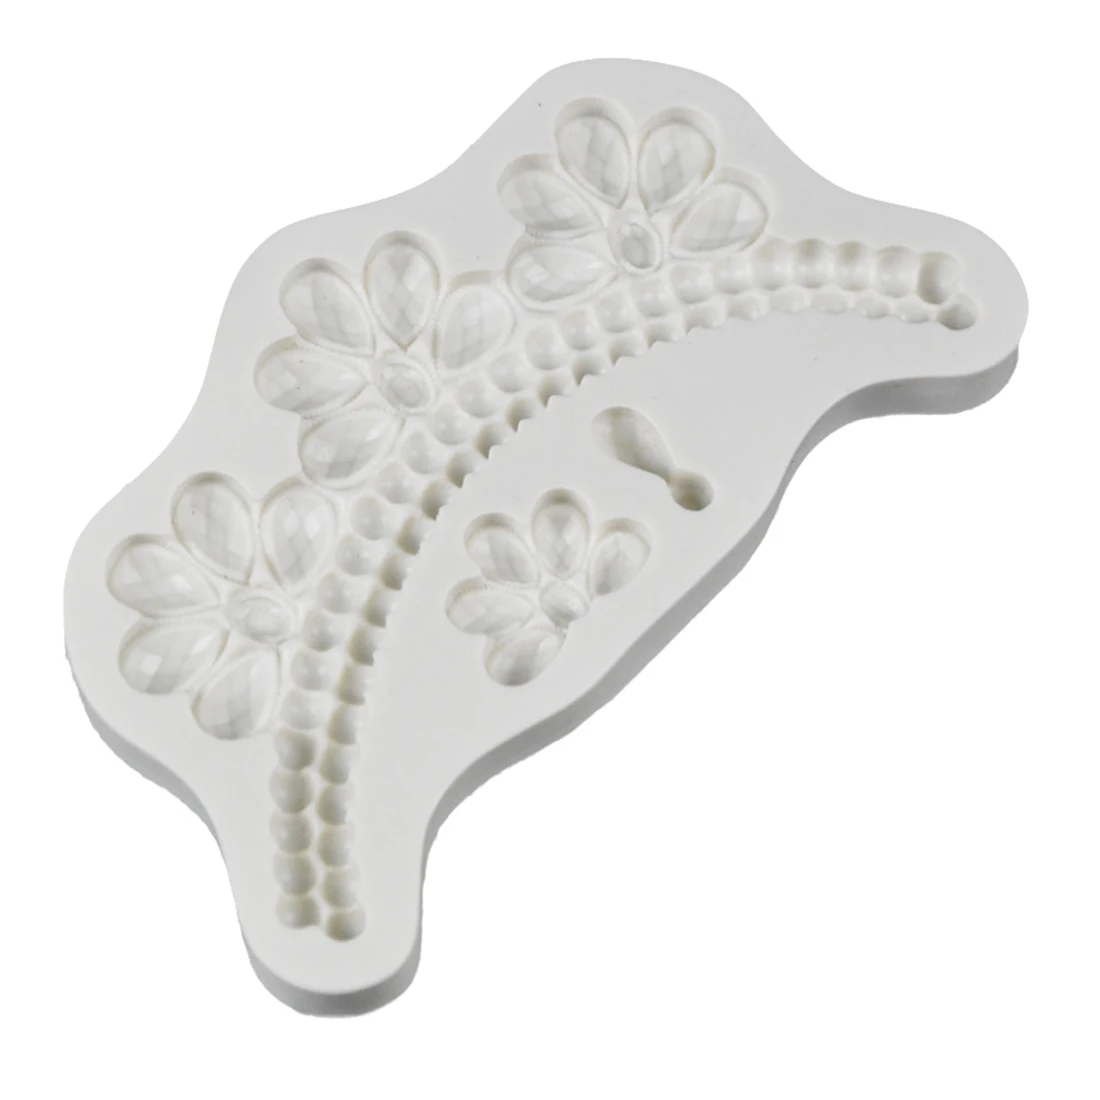 Цветок розы Форма растений 3D помадка торт силиконовая форма для формы из полимерной глины кухня шоколадные кондитерские Конфеты инструменты для изготовления - Цвет: Pearl necklace